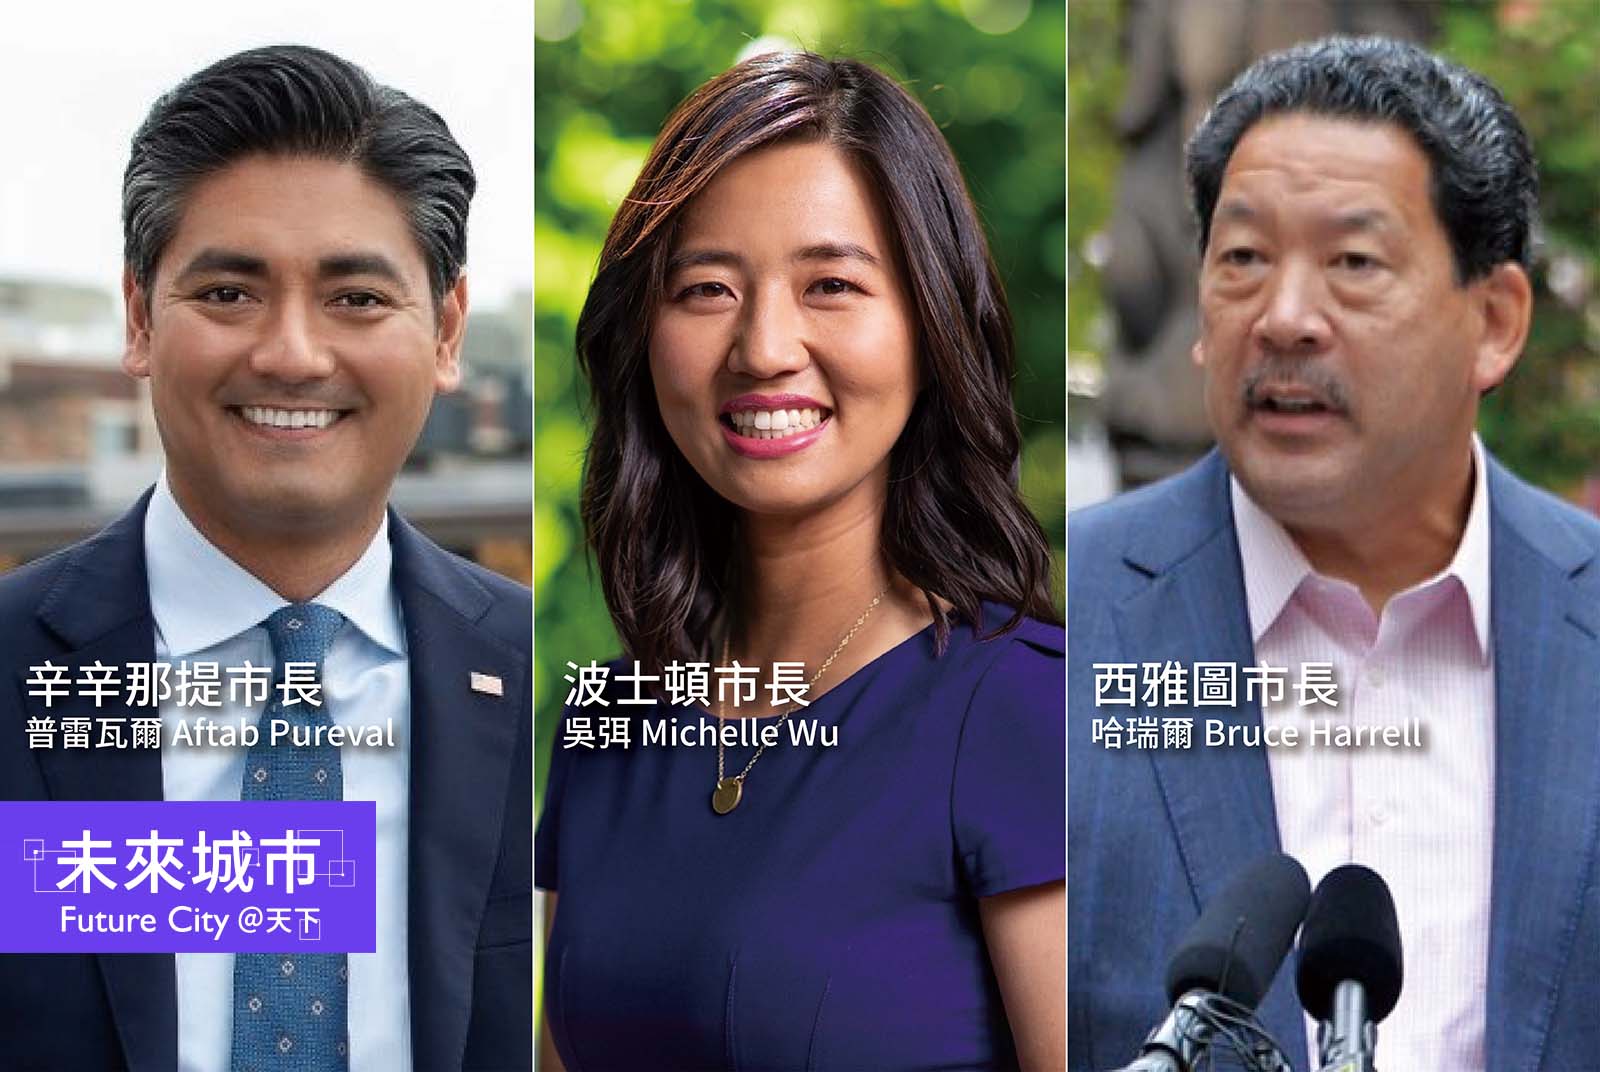 美國三個城市打破百年歷史，選出三位亞裔首長。